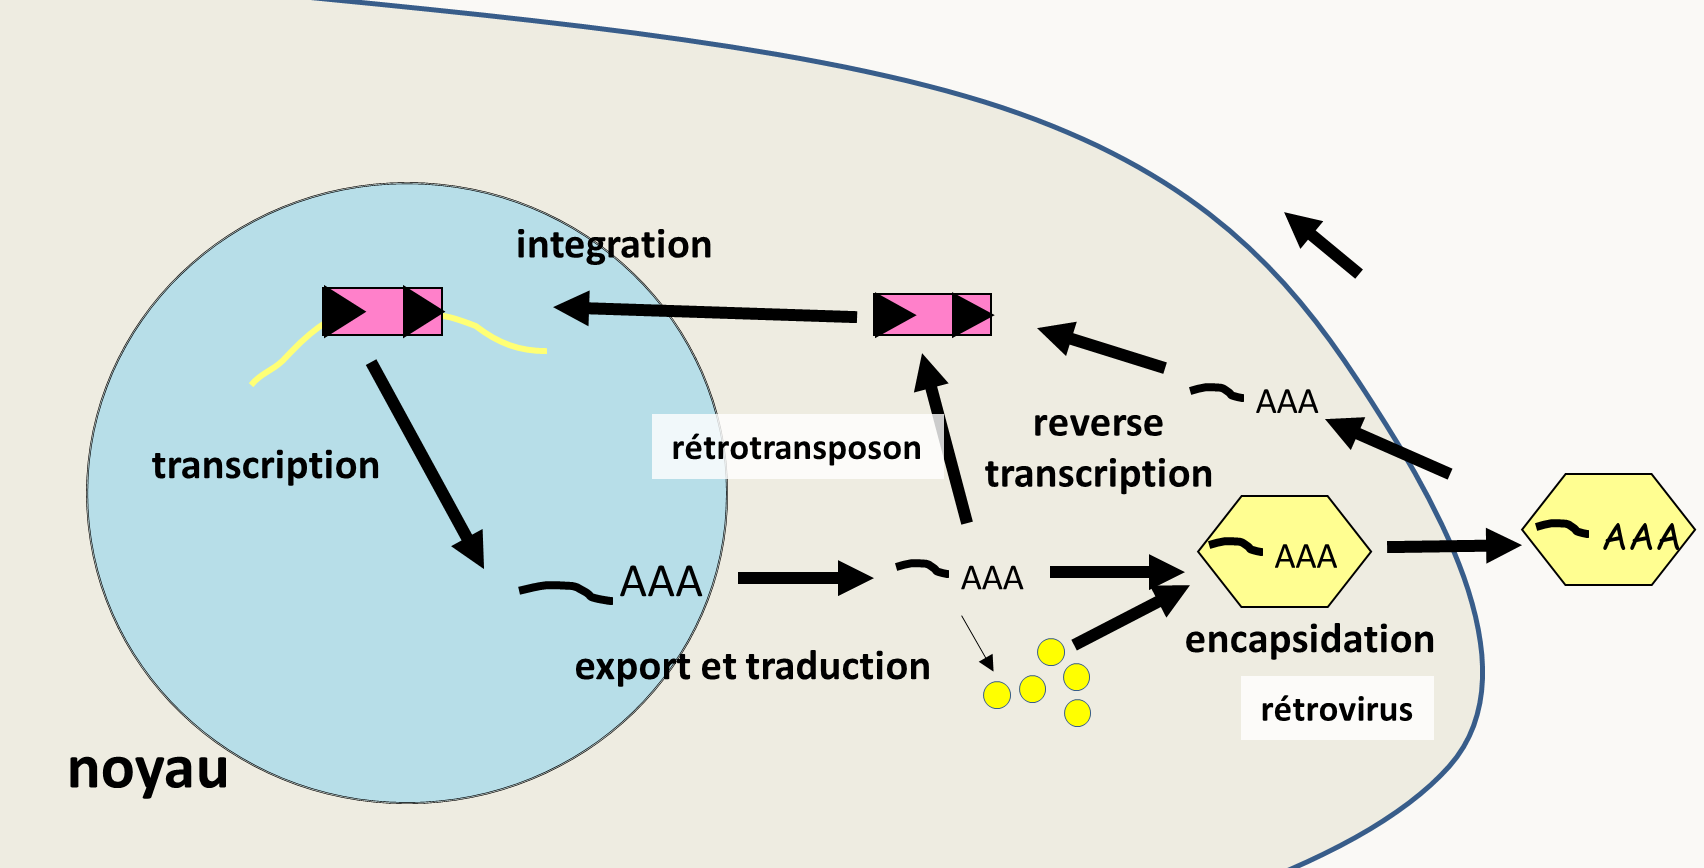 cycle des rétrotransposons et de rétrovirus. L'élément initial est présent dans le génome de l'hôte où il s'est intégré par recombinaison. Cet élément possède son propre promoteur ce qui permet sa transcription. L'ARN messager maturé est exporté dans le cytoplasme où il est traduit, ce qui permet la production d'une transcriptase inverse et/ou de protéines de capside. Dans le cas des rétrotransposons, la transcriptase inverse se sert immédiatement de l'ARN pour refaire un ADN double brin qui une fois importé dans le noyau peut se réinsérer. Dans le cas des rétrovirus, l'ARN est encapsidé et la particule virale exportée. Elle pourra alors infecter une nouvelle cellule hôte. Notez que l'on connaît des exemples où l'ARN du rétrotransposons est encapsidé mais la particule pseudovirale obtenue ne quitte pas la cellule.